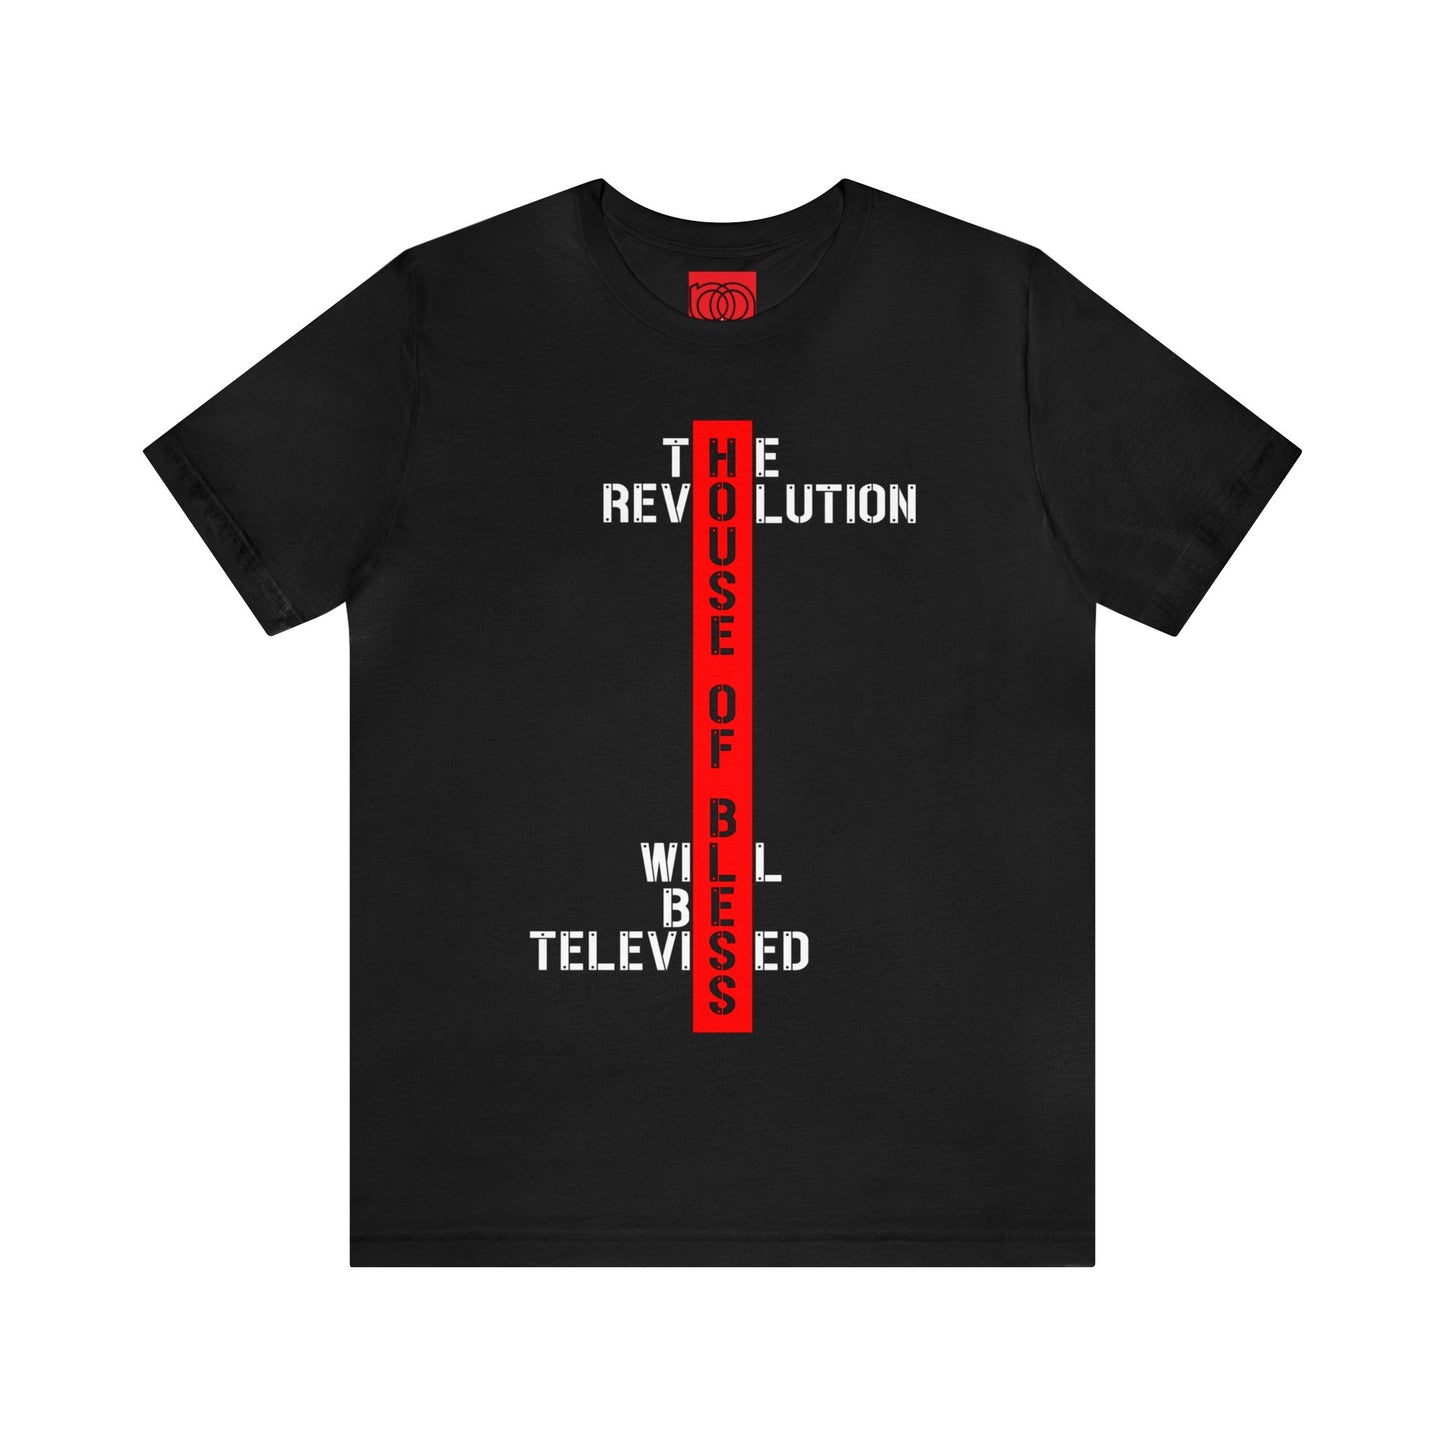 REVOLUTION TELEVISED Unisex T (Black, White, Red)